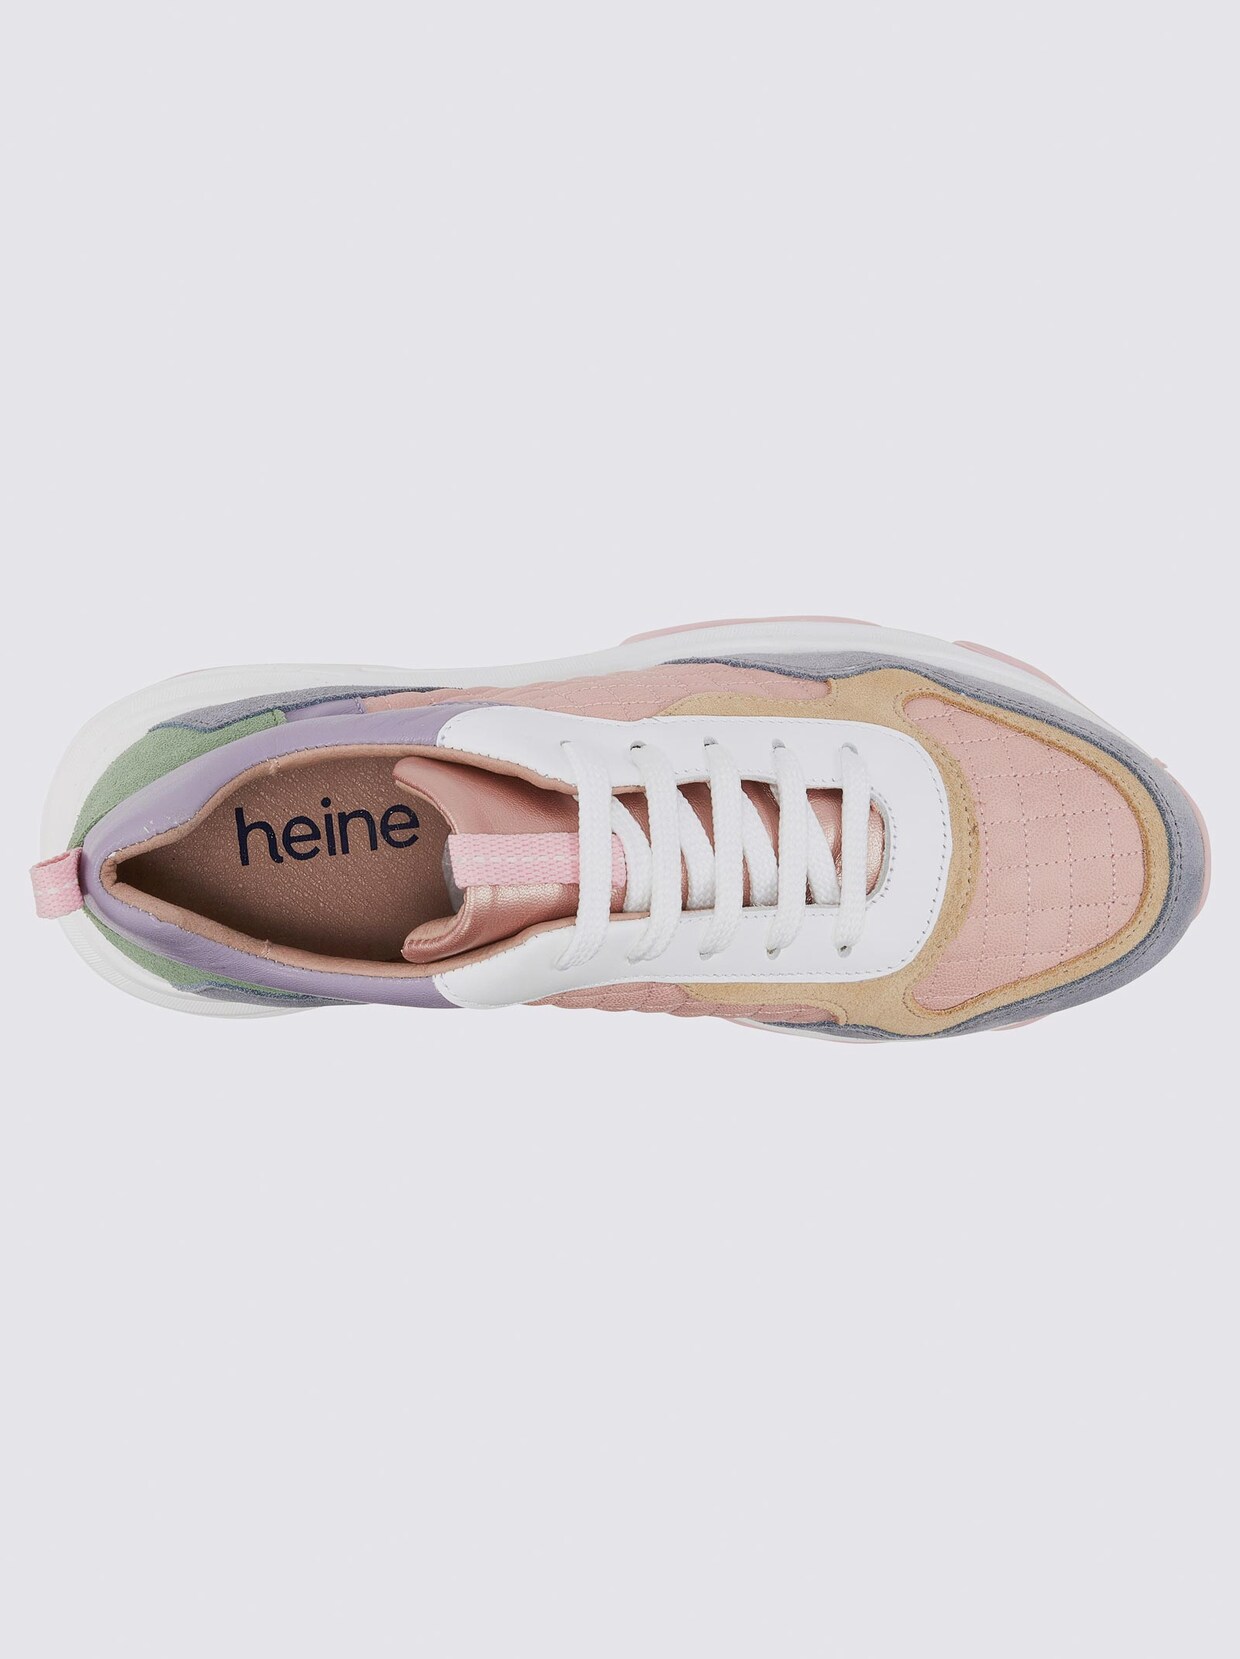 heine Sneaker - rose-blau-bunt